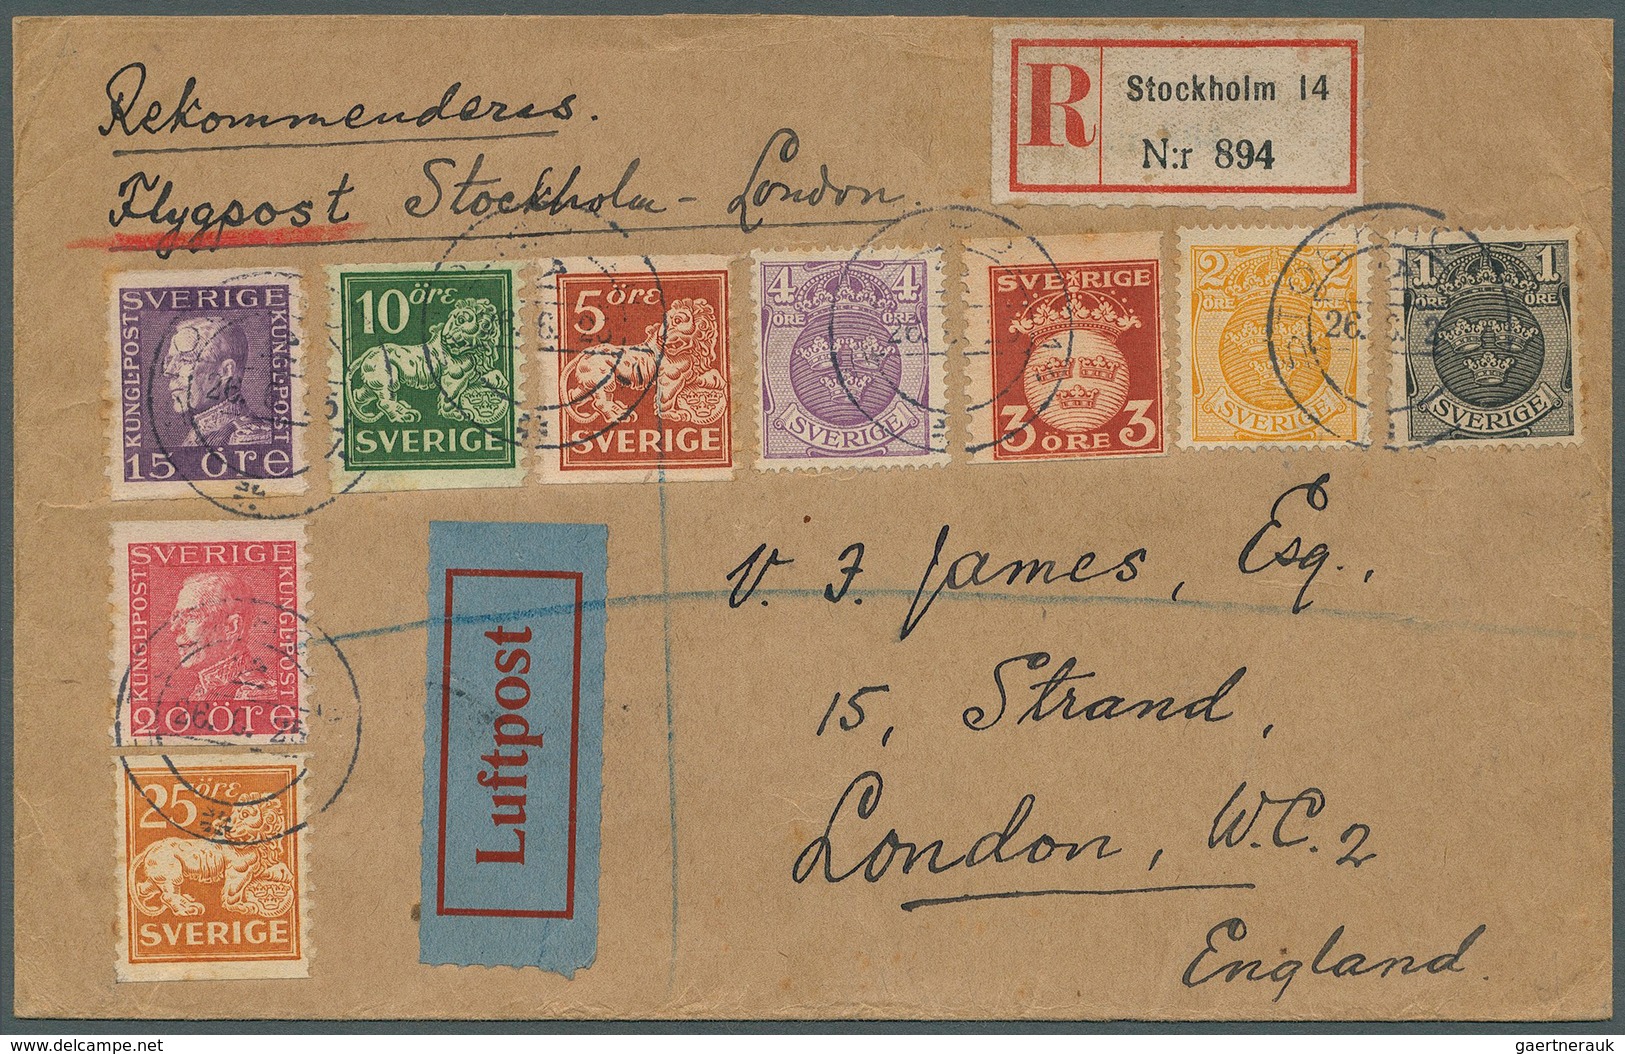 27990 Schweden: 1934/1961, vielseitige Partie von ca. 55 Luftpostbelegen mit Bedarfspost und philatelistis